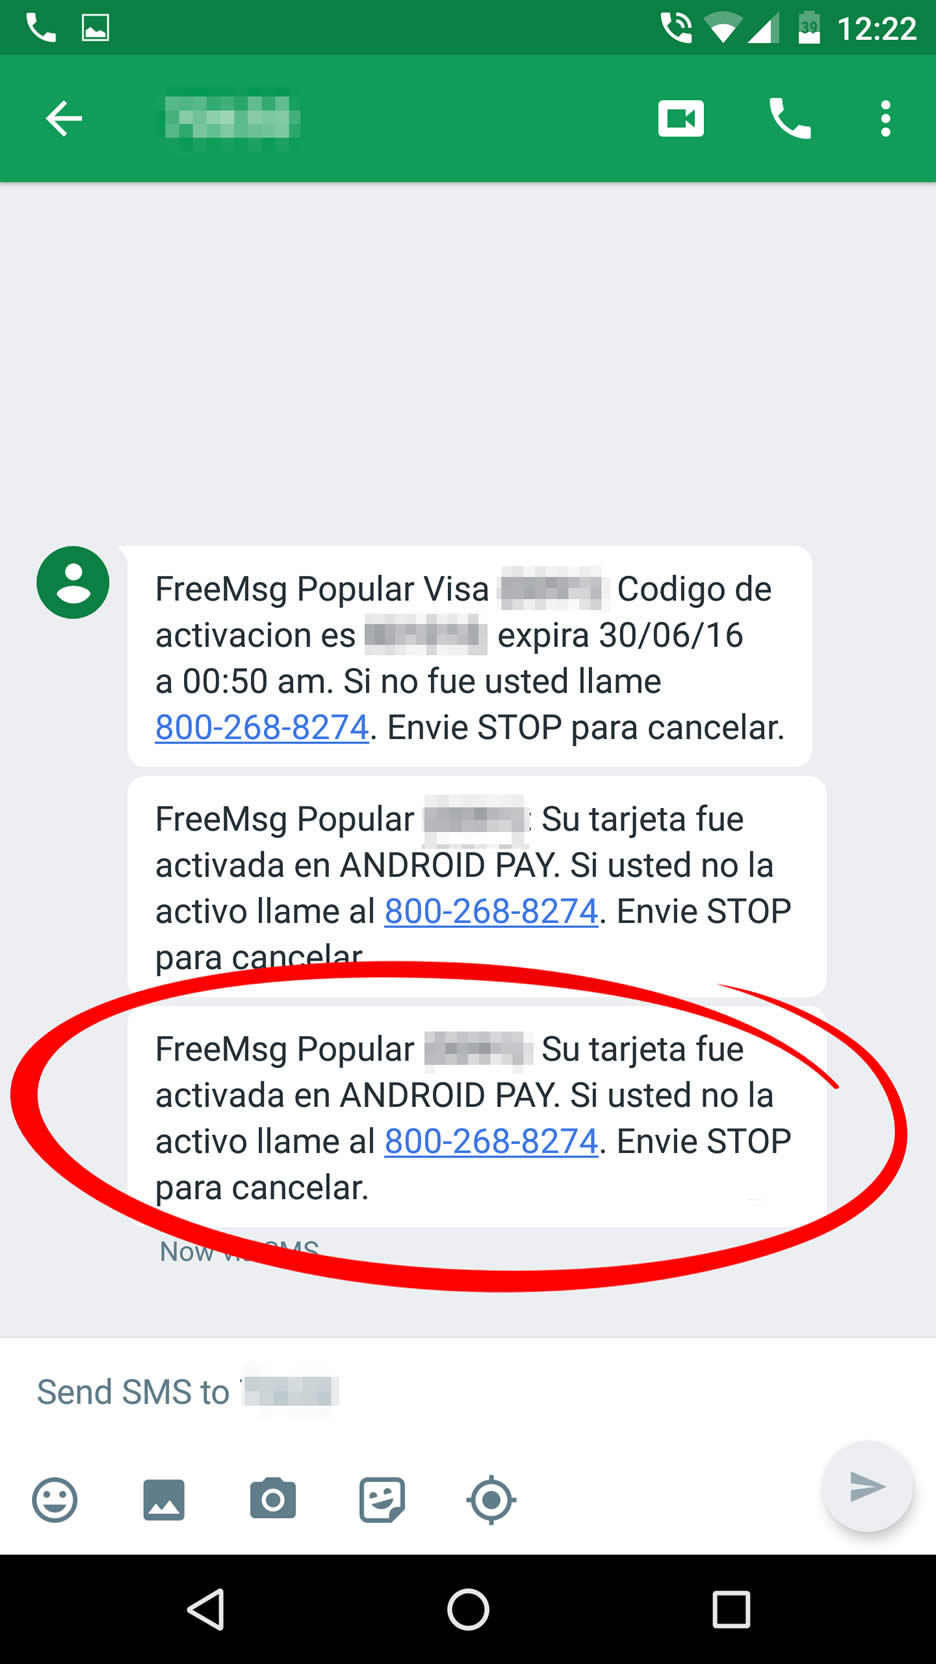 Finalmente, un mensaje de texto es enviado al celular por Banco Popular donde claramente indica que la tarjeta fue activada en Android Pay (imagen: Tecnético)